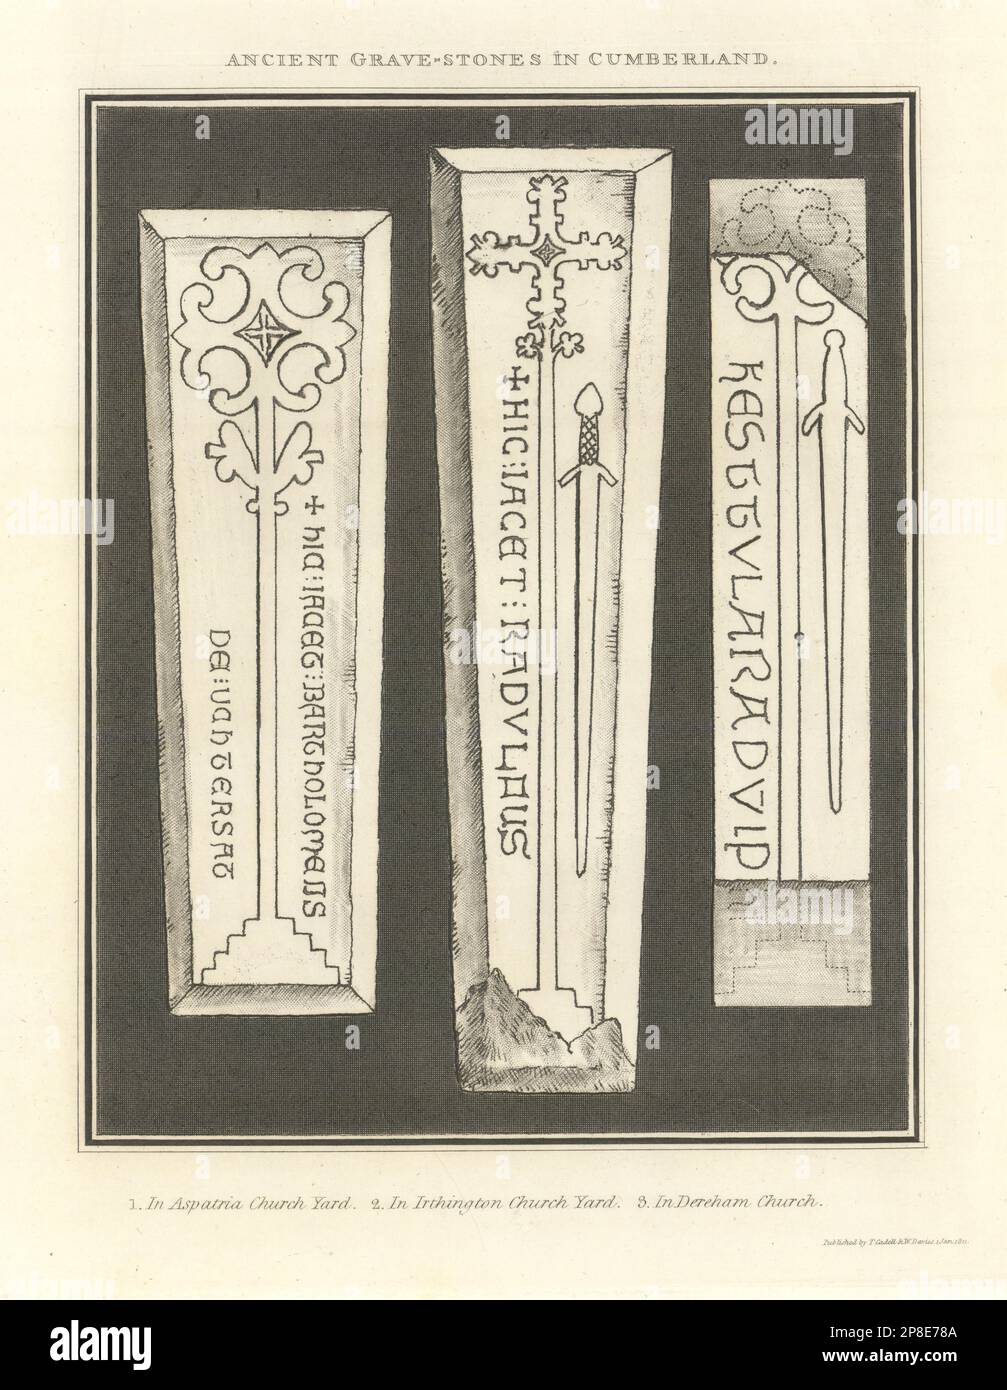 Grabsteine in Aspatria, Irthington und Dearham Kirchhöfen. Cumbria 1816-Druck Stockfoto